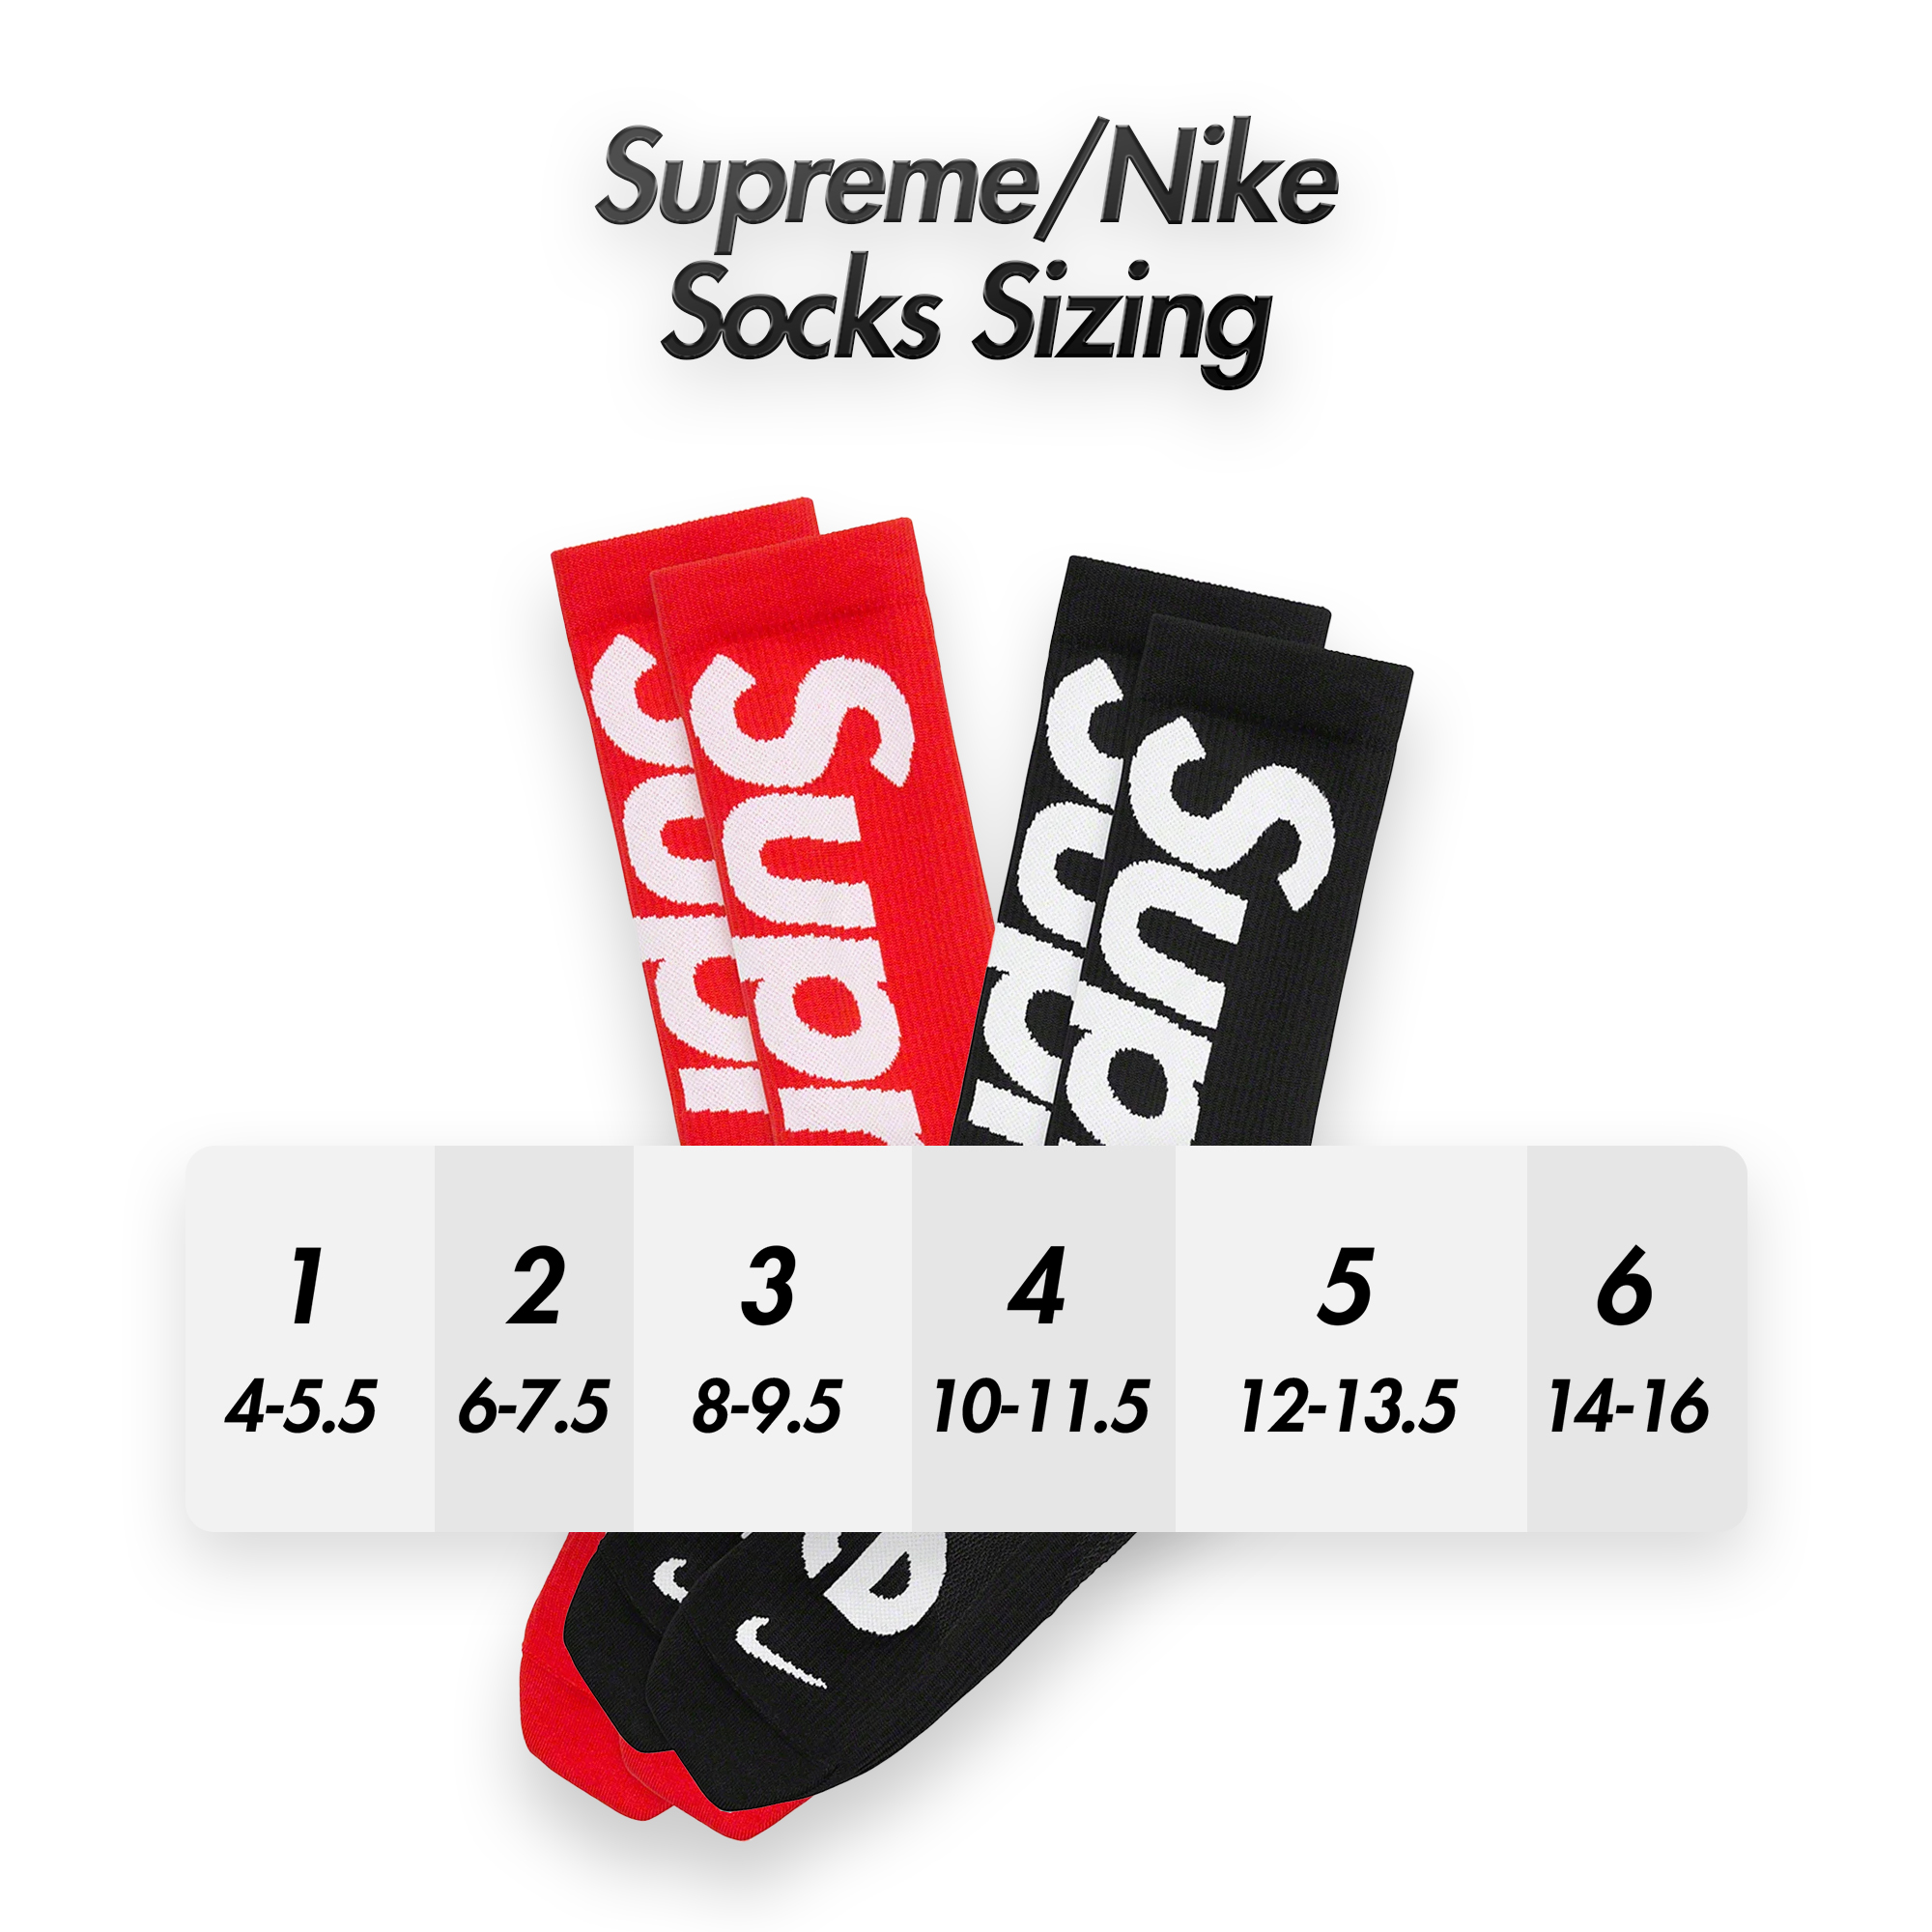 Plenarmøde Spænde Diplomatiske spørgsmål Supreme Drops on X: "Little guide I made for the Supreme/Nike Socks Sizing  https://t.co/t4BrVUglaN" / X